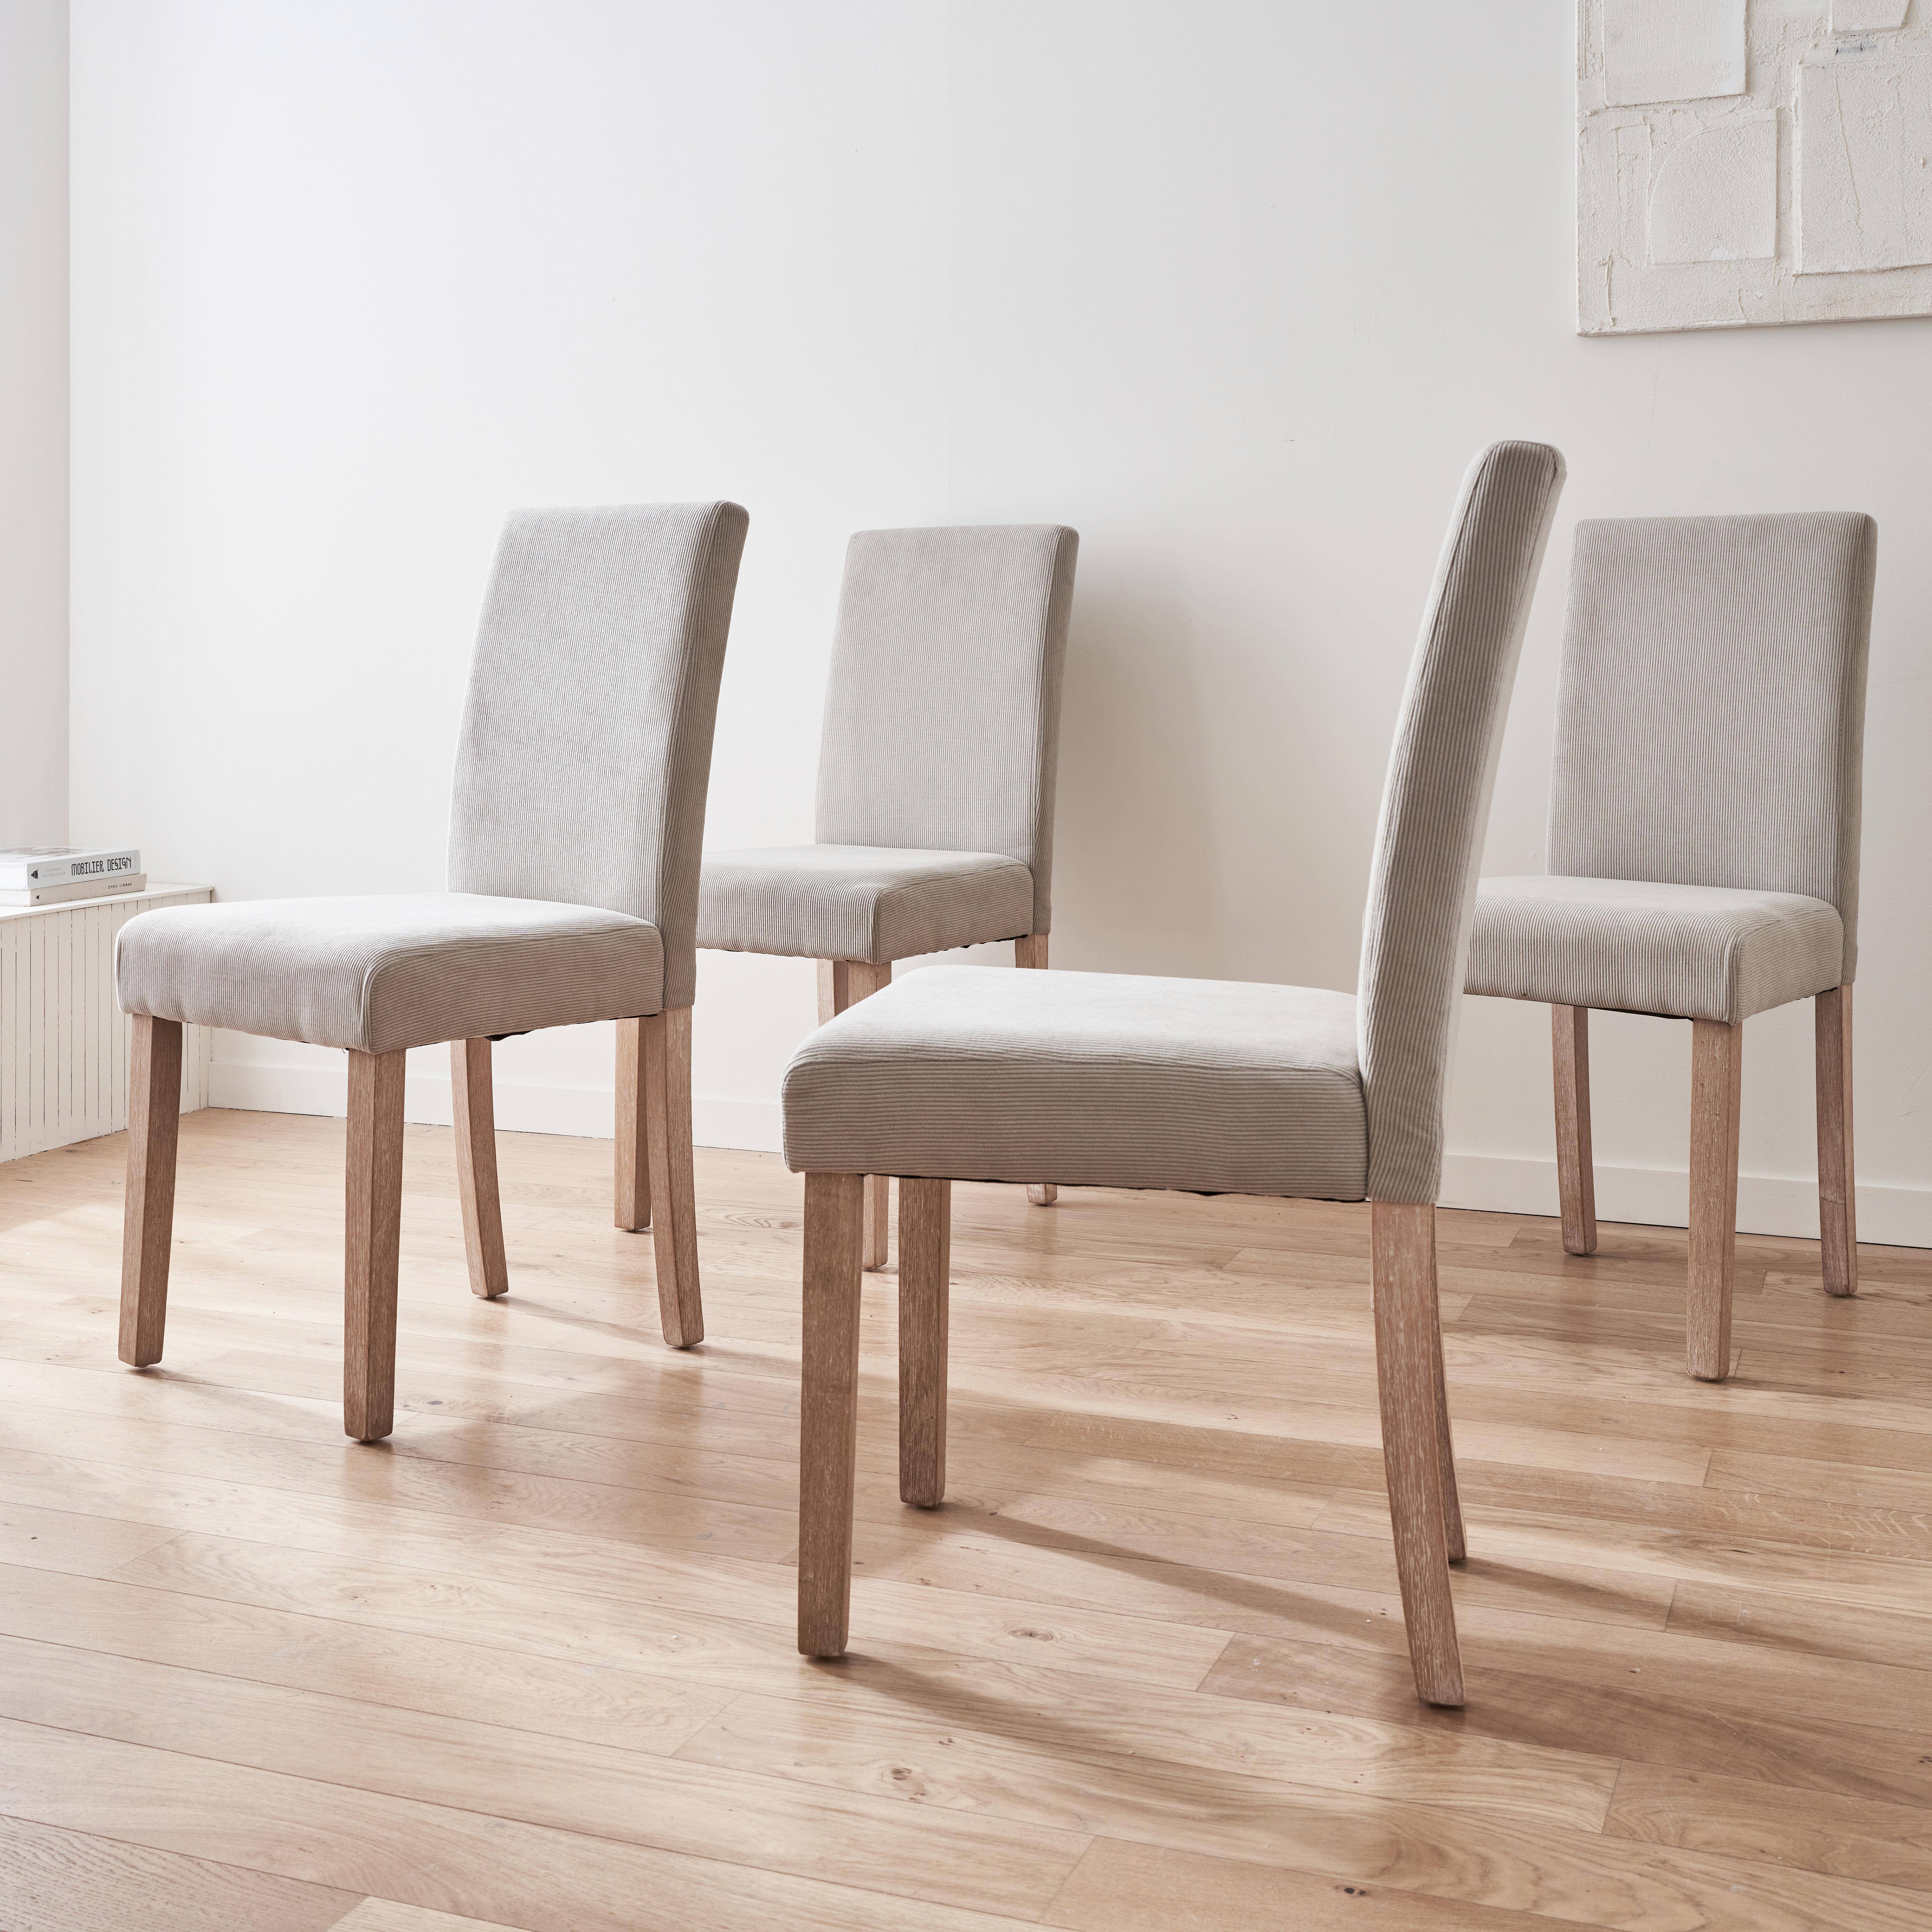 Set van 4 grijze corduroy stoelen, Rita, met witte poten van heveahout Photo2